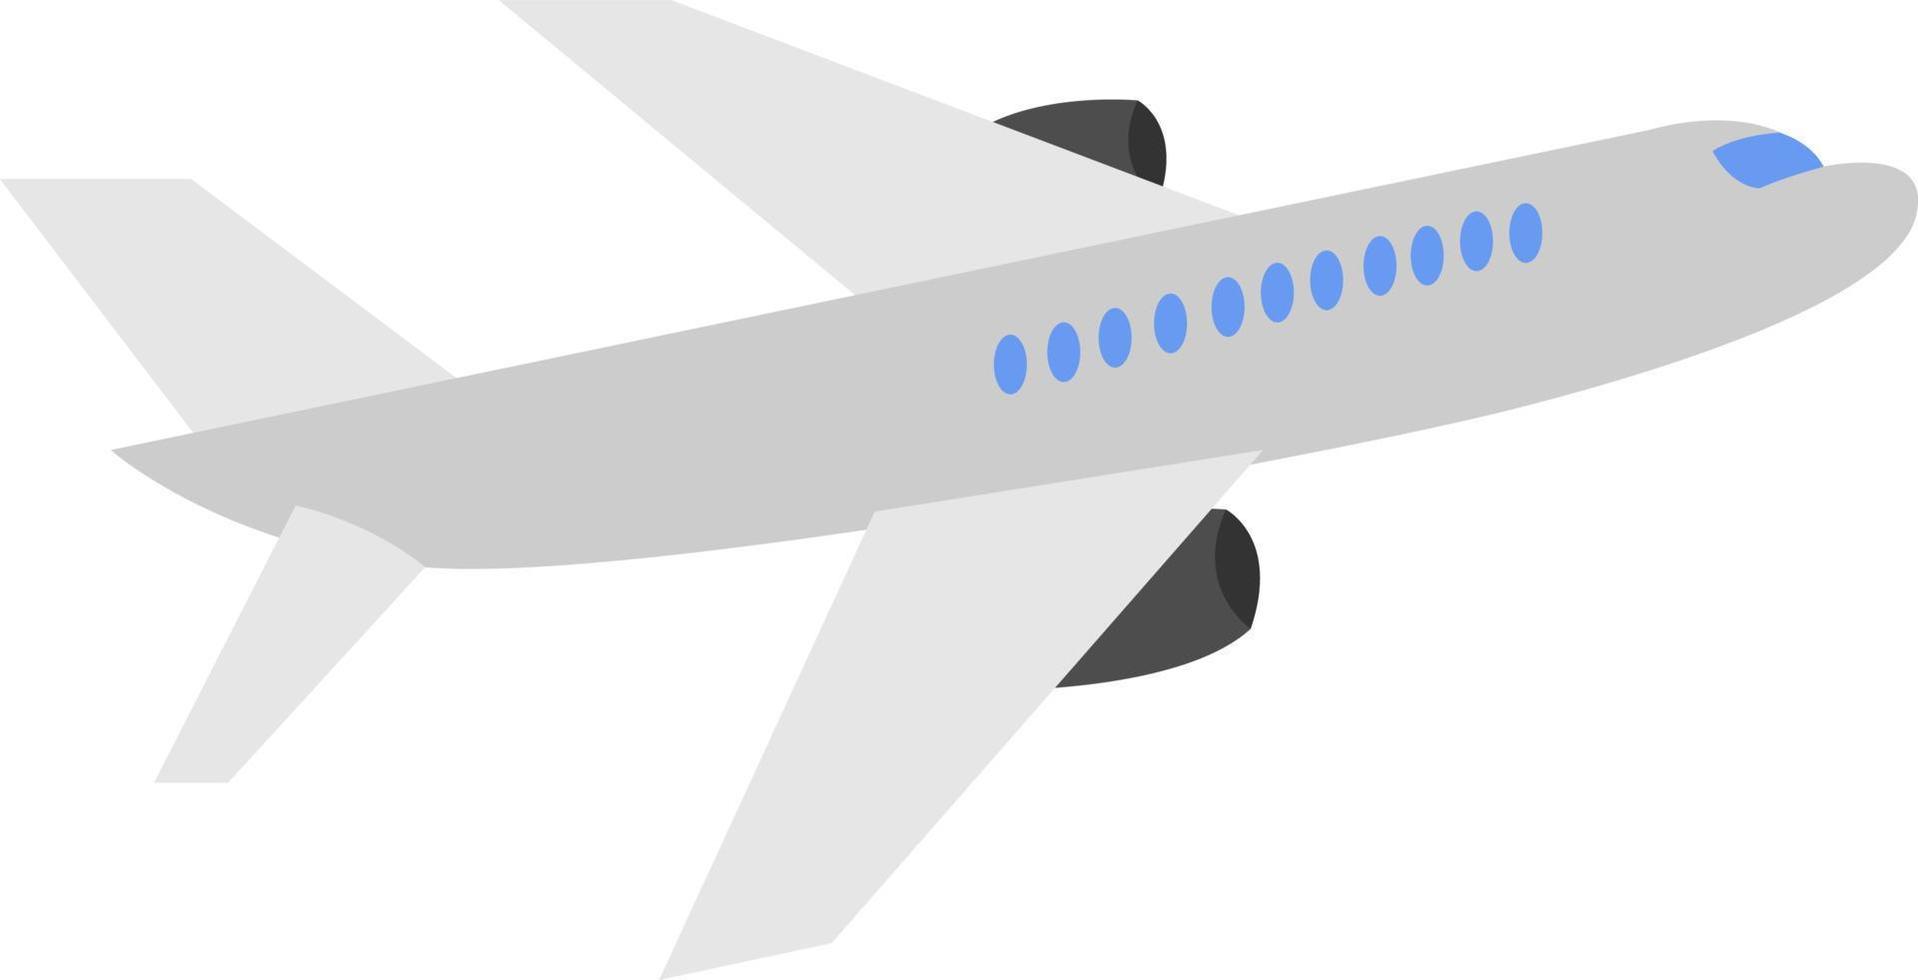 Passenger plane, illustration, vector on white background.